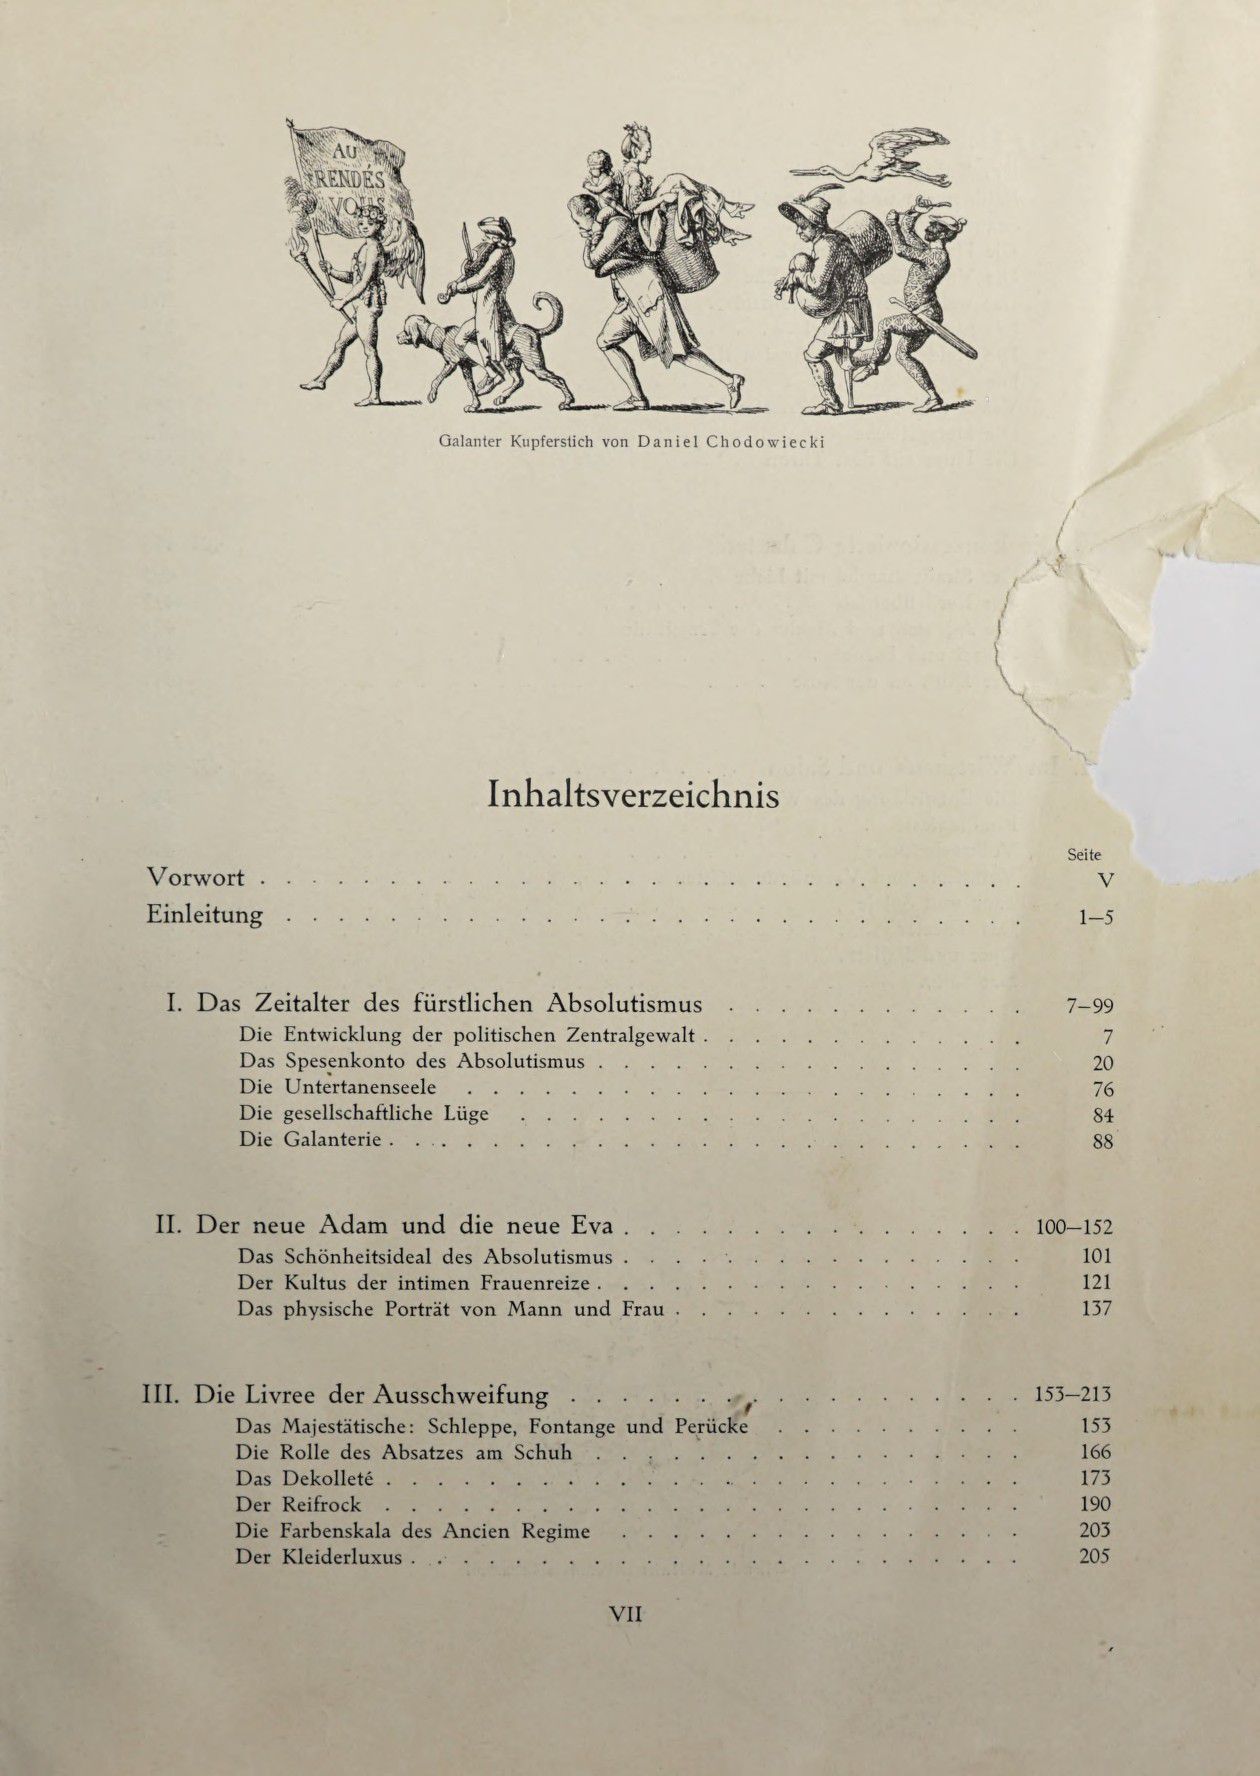 [Eduard Fuchs] Illustrierte Sittengeschichte vom Mittelalter bis zur Gegenwart: Bd. 2. and Ergänzungsband. Die galante Zeit [German] 6